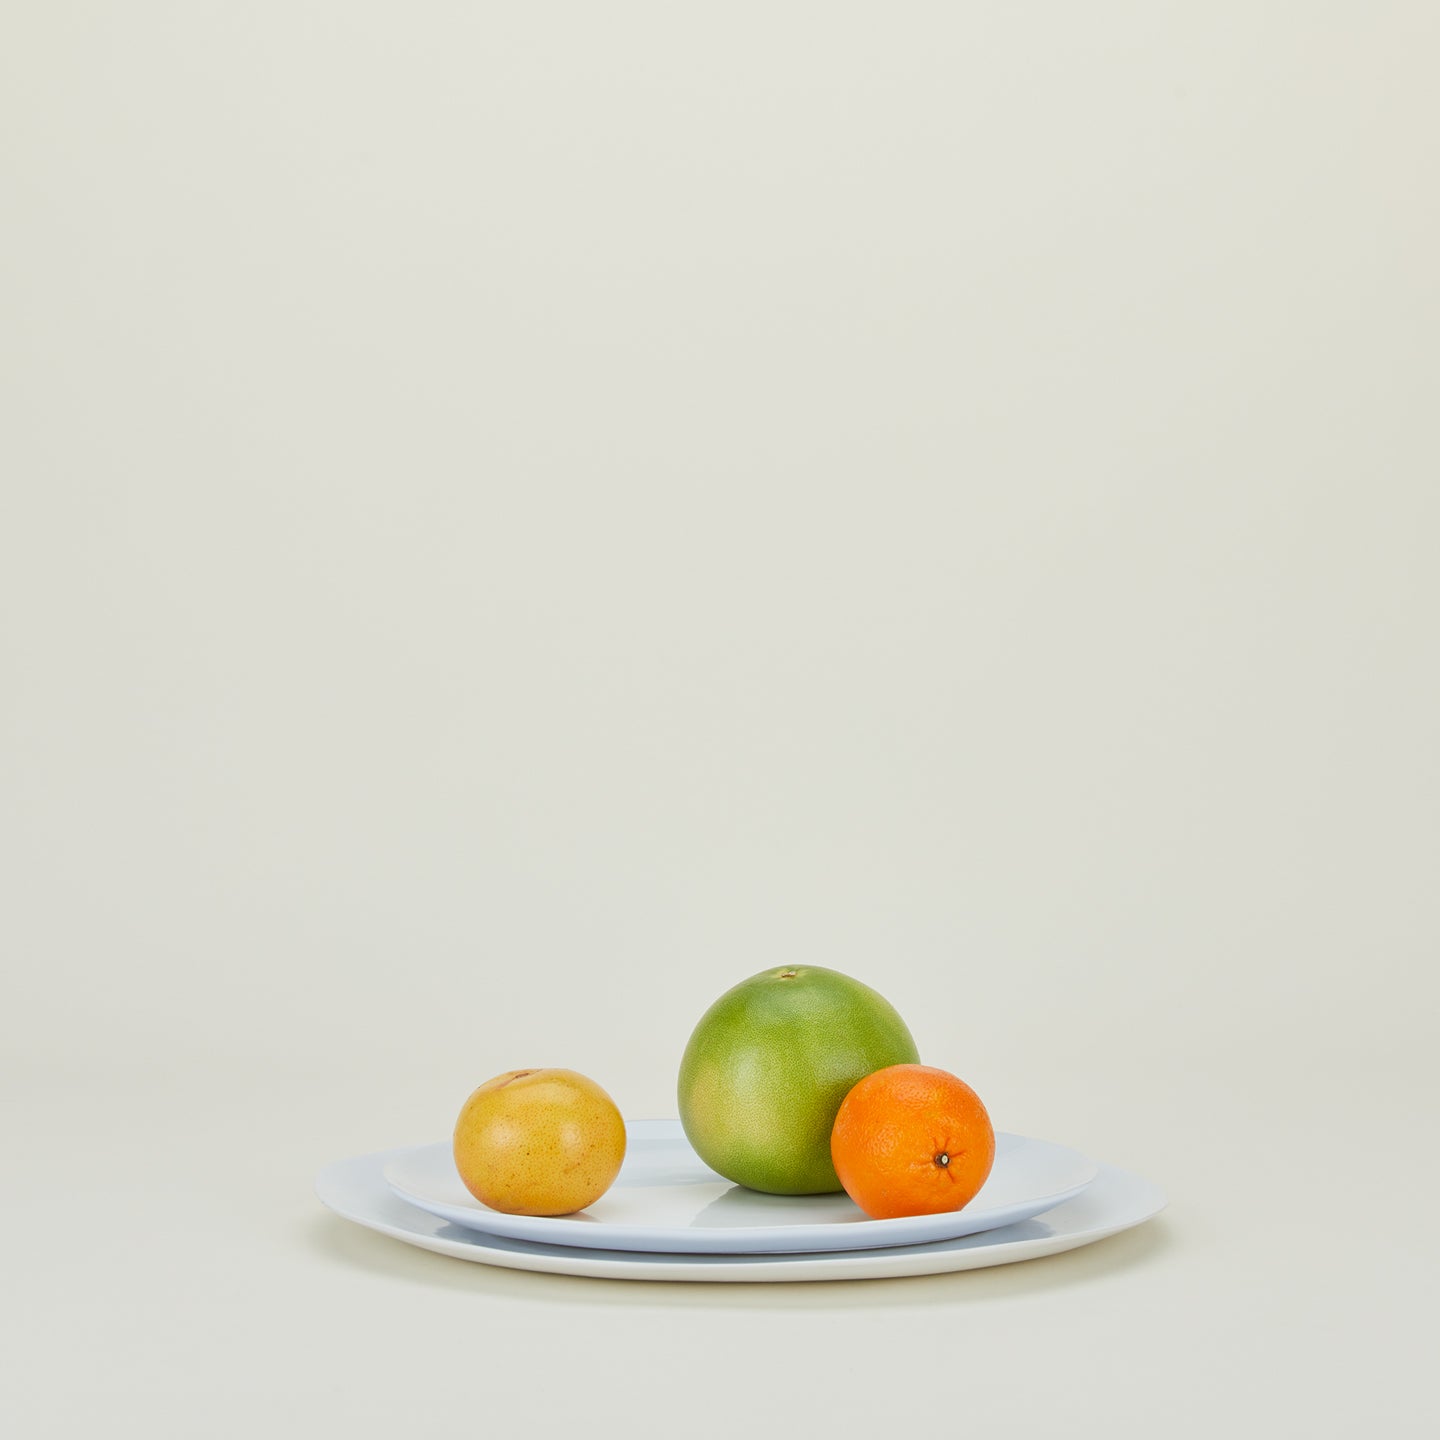 Organic Serving Platter - White